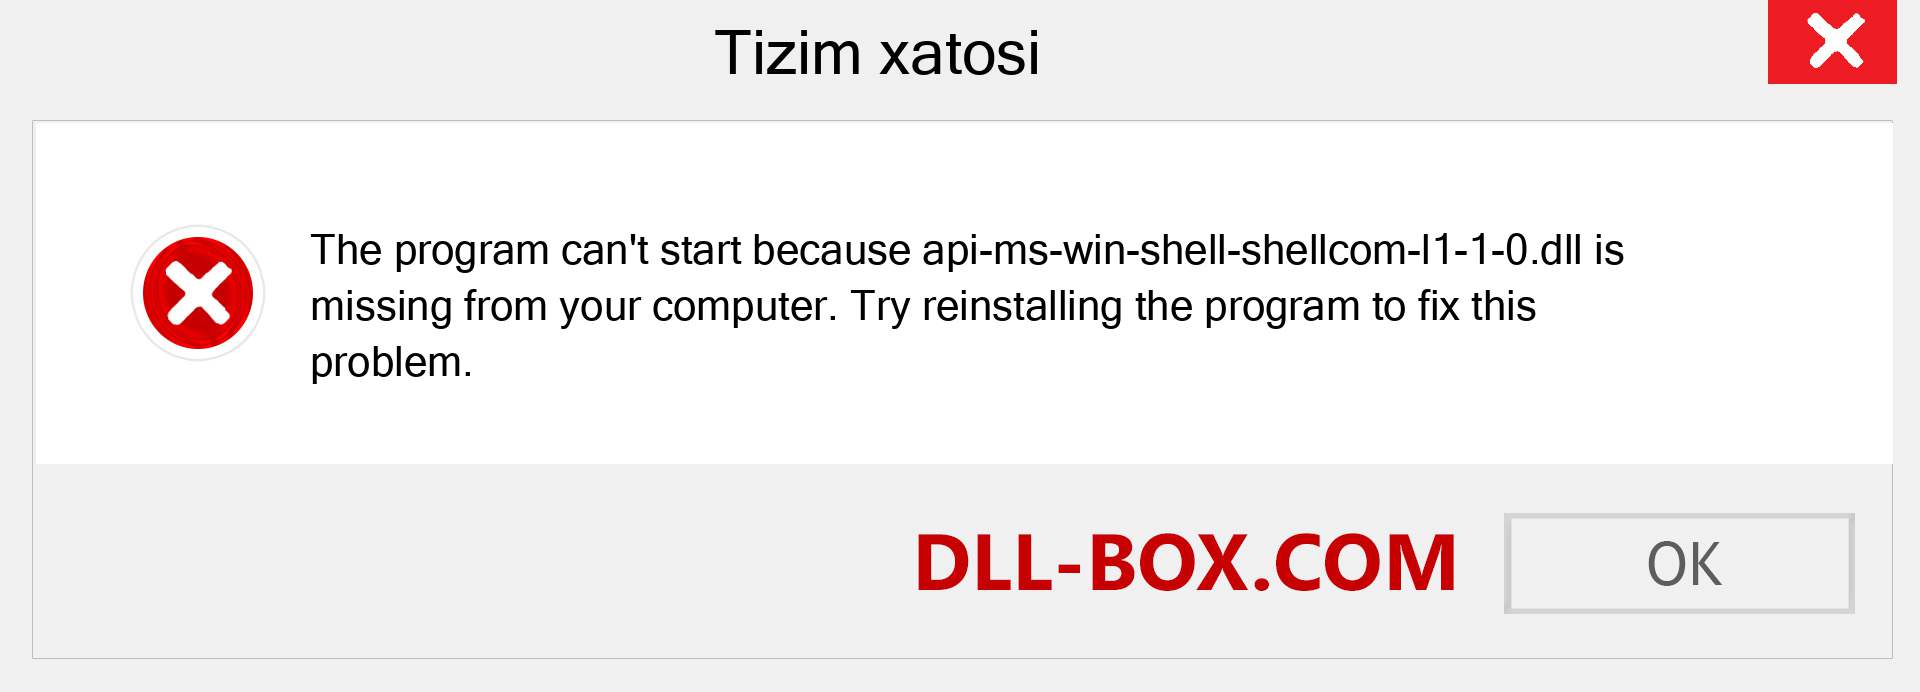 api-ms-win-shell-shellcom-l1-1-0.dll fayli yo'qolganmi?. Windows 7, 8, 10 uchun yuklab olish - Windowsda api-ms-win-shell-shellcom-l1-1-0 dll etishmayotgan xatoni tuzating, rasmlar, rasmlar